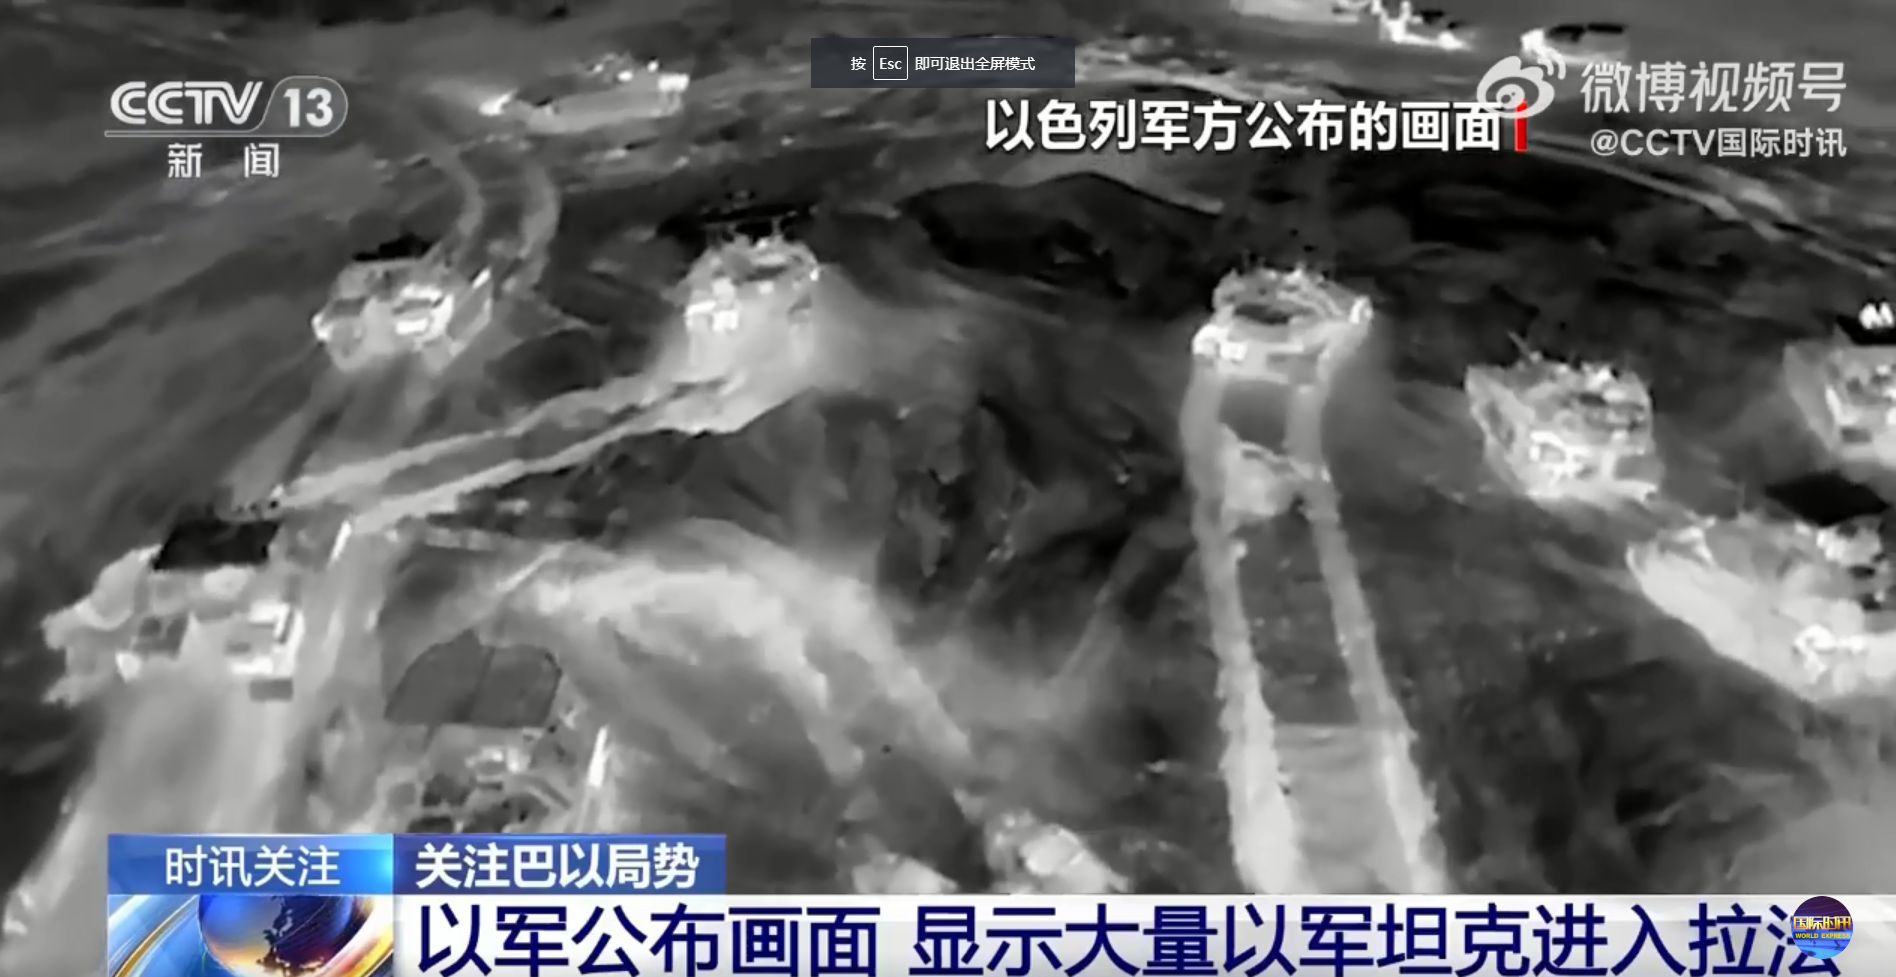 图片来源：CCTV国际时讯官方微博